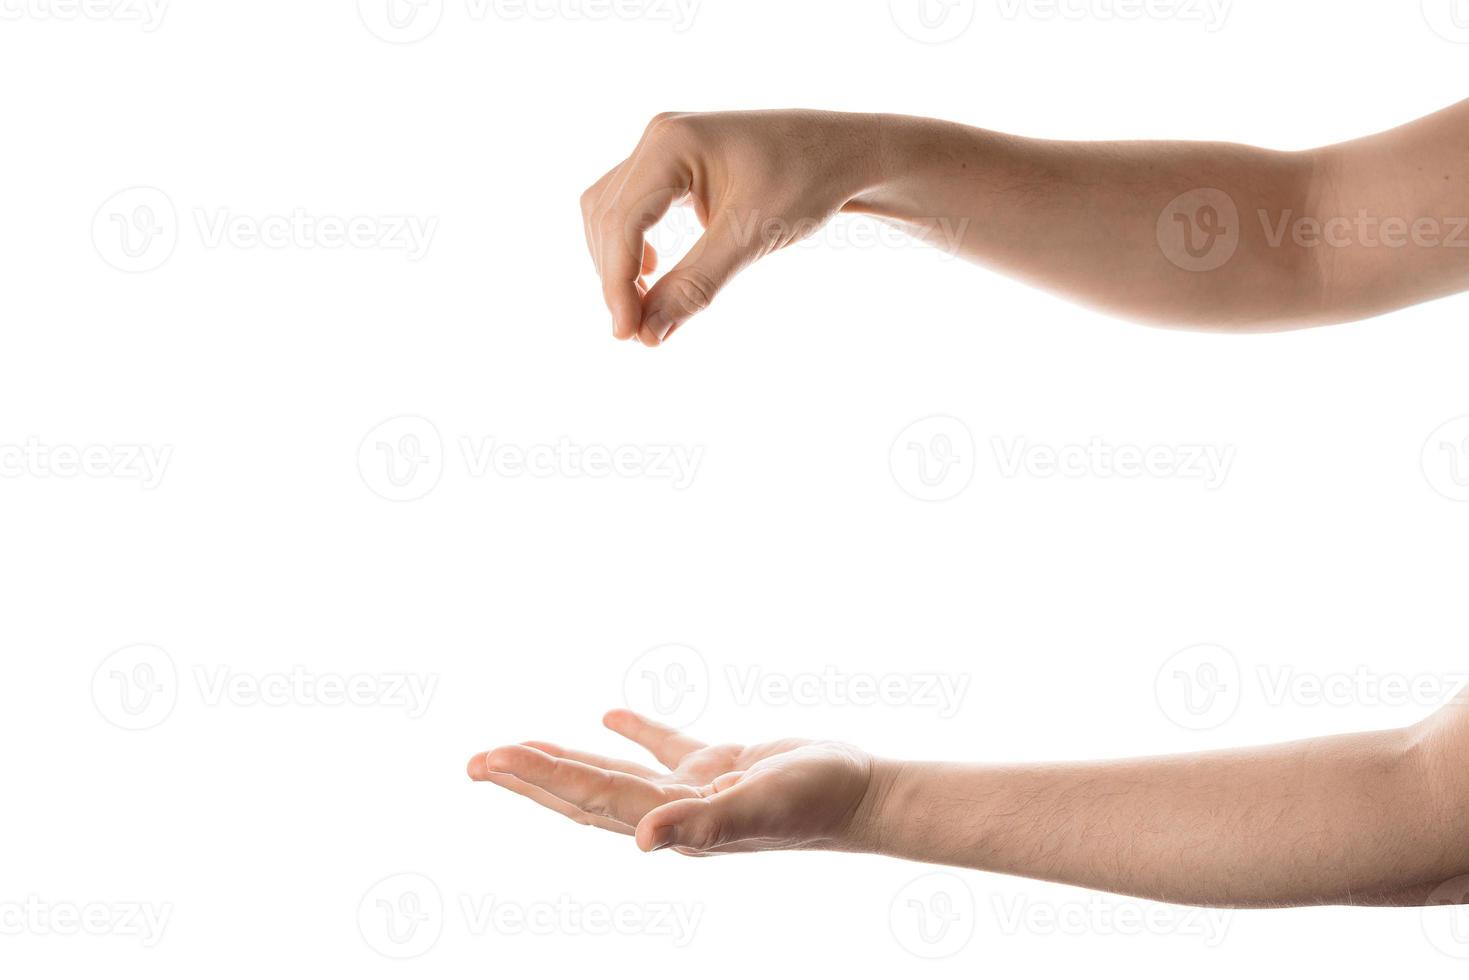 mão do homem segurar, agarrar ou pegar algum objeto, gesto com a mão. isolado no fundo branco. foto